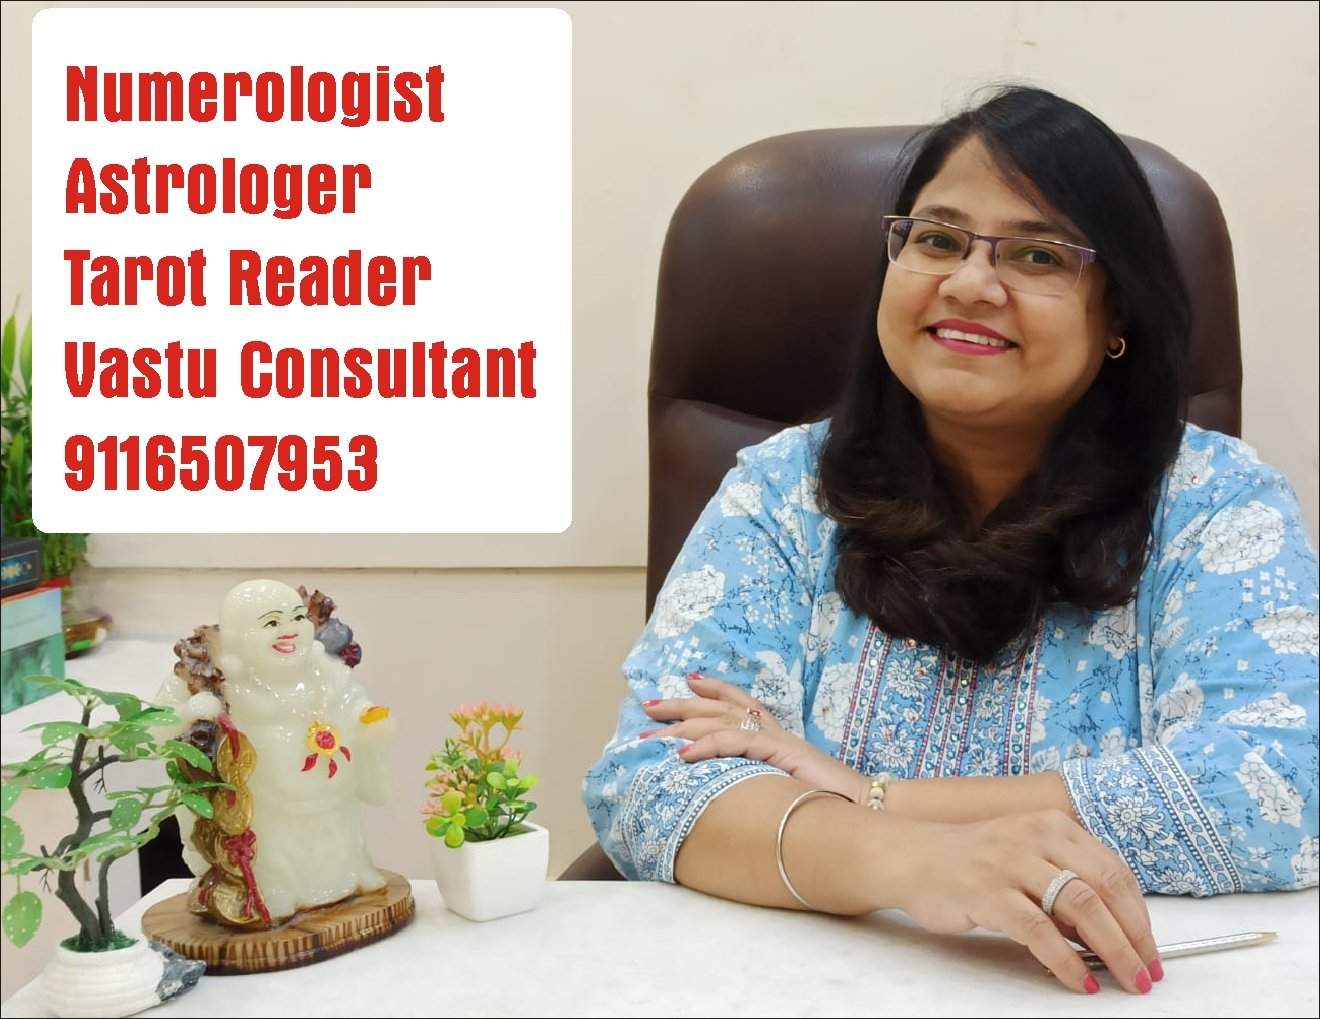 Best Numerologist Astrologer Tarot Reader Vastu Consultant in Jaipur